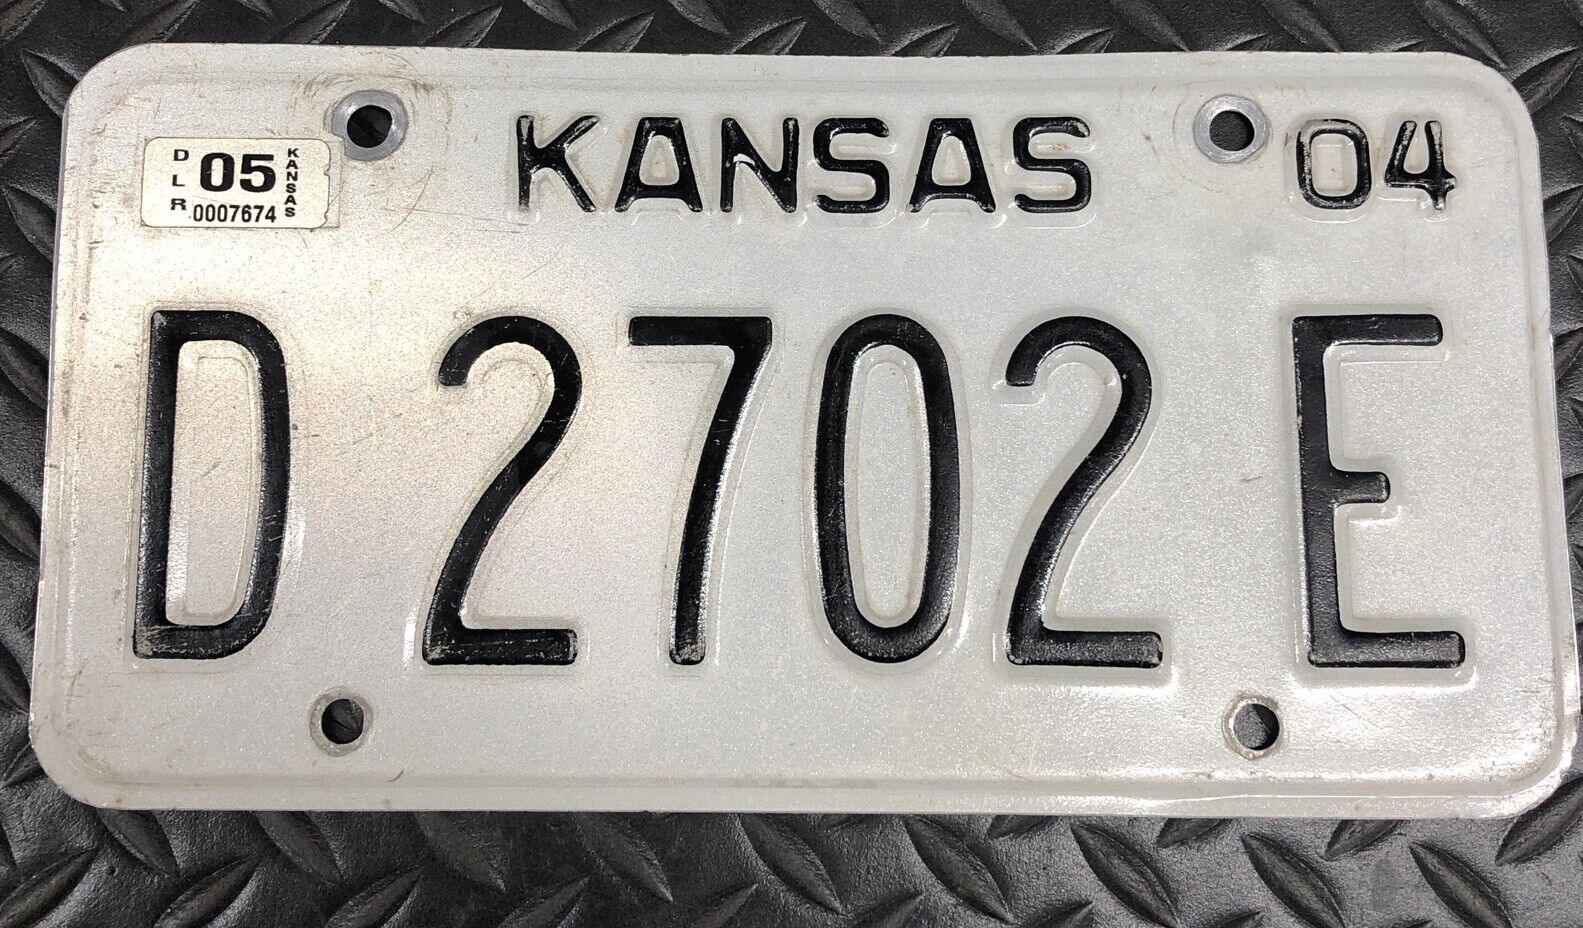 2004 - 2005 Kansas Dealer License Plate D 2702 E